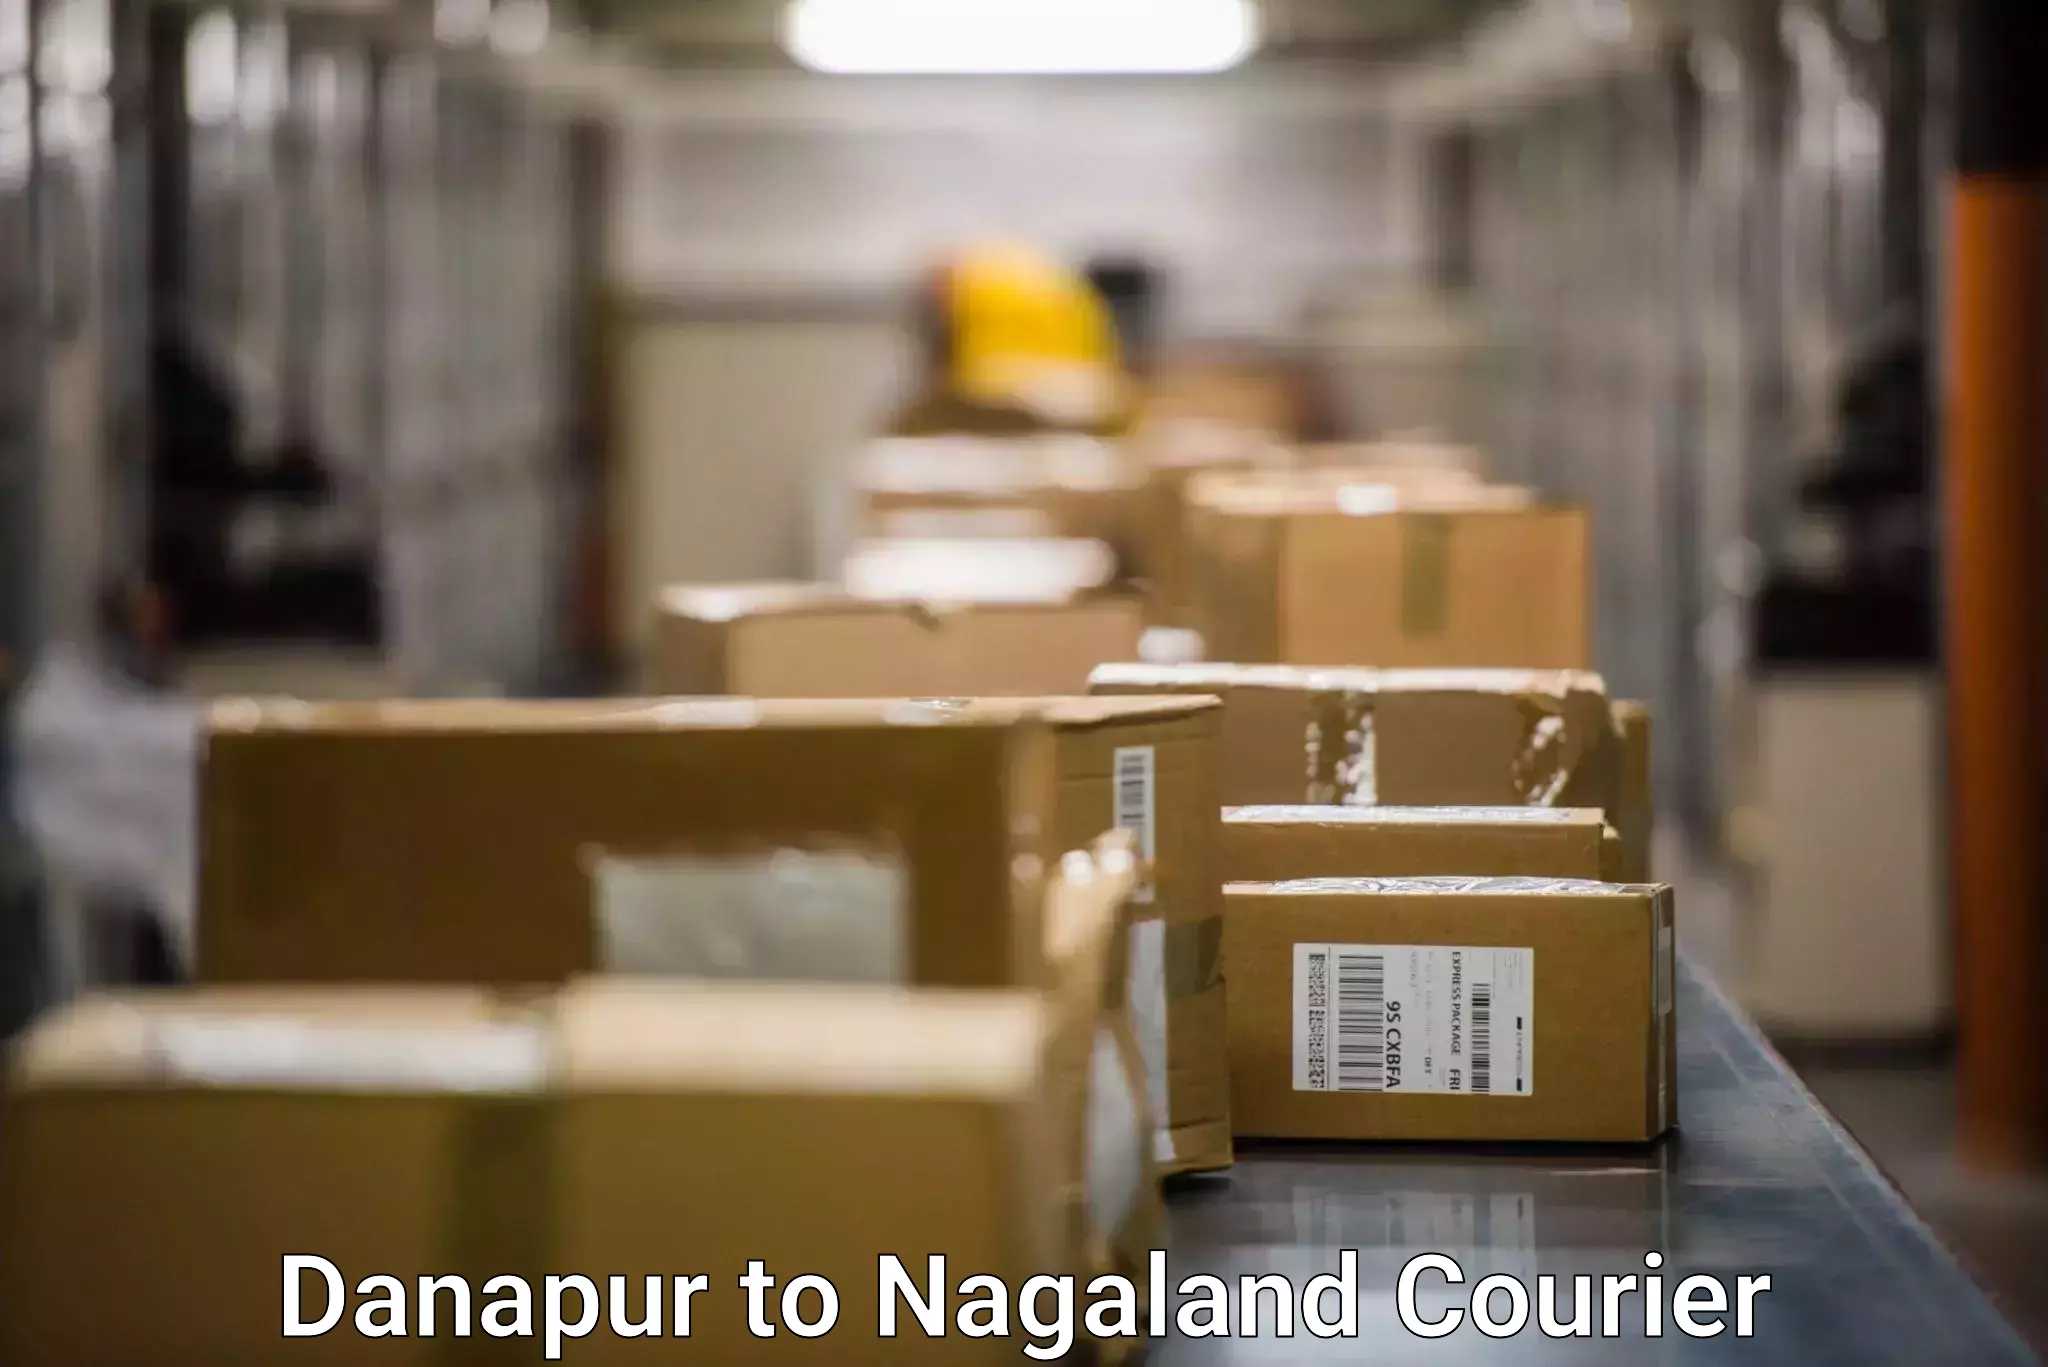 Efficient order fulfillment Danapur to Dimapur